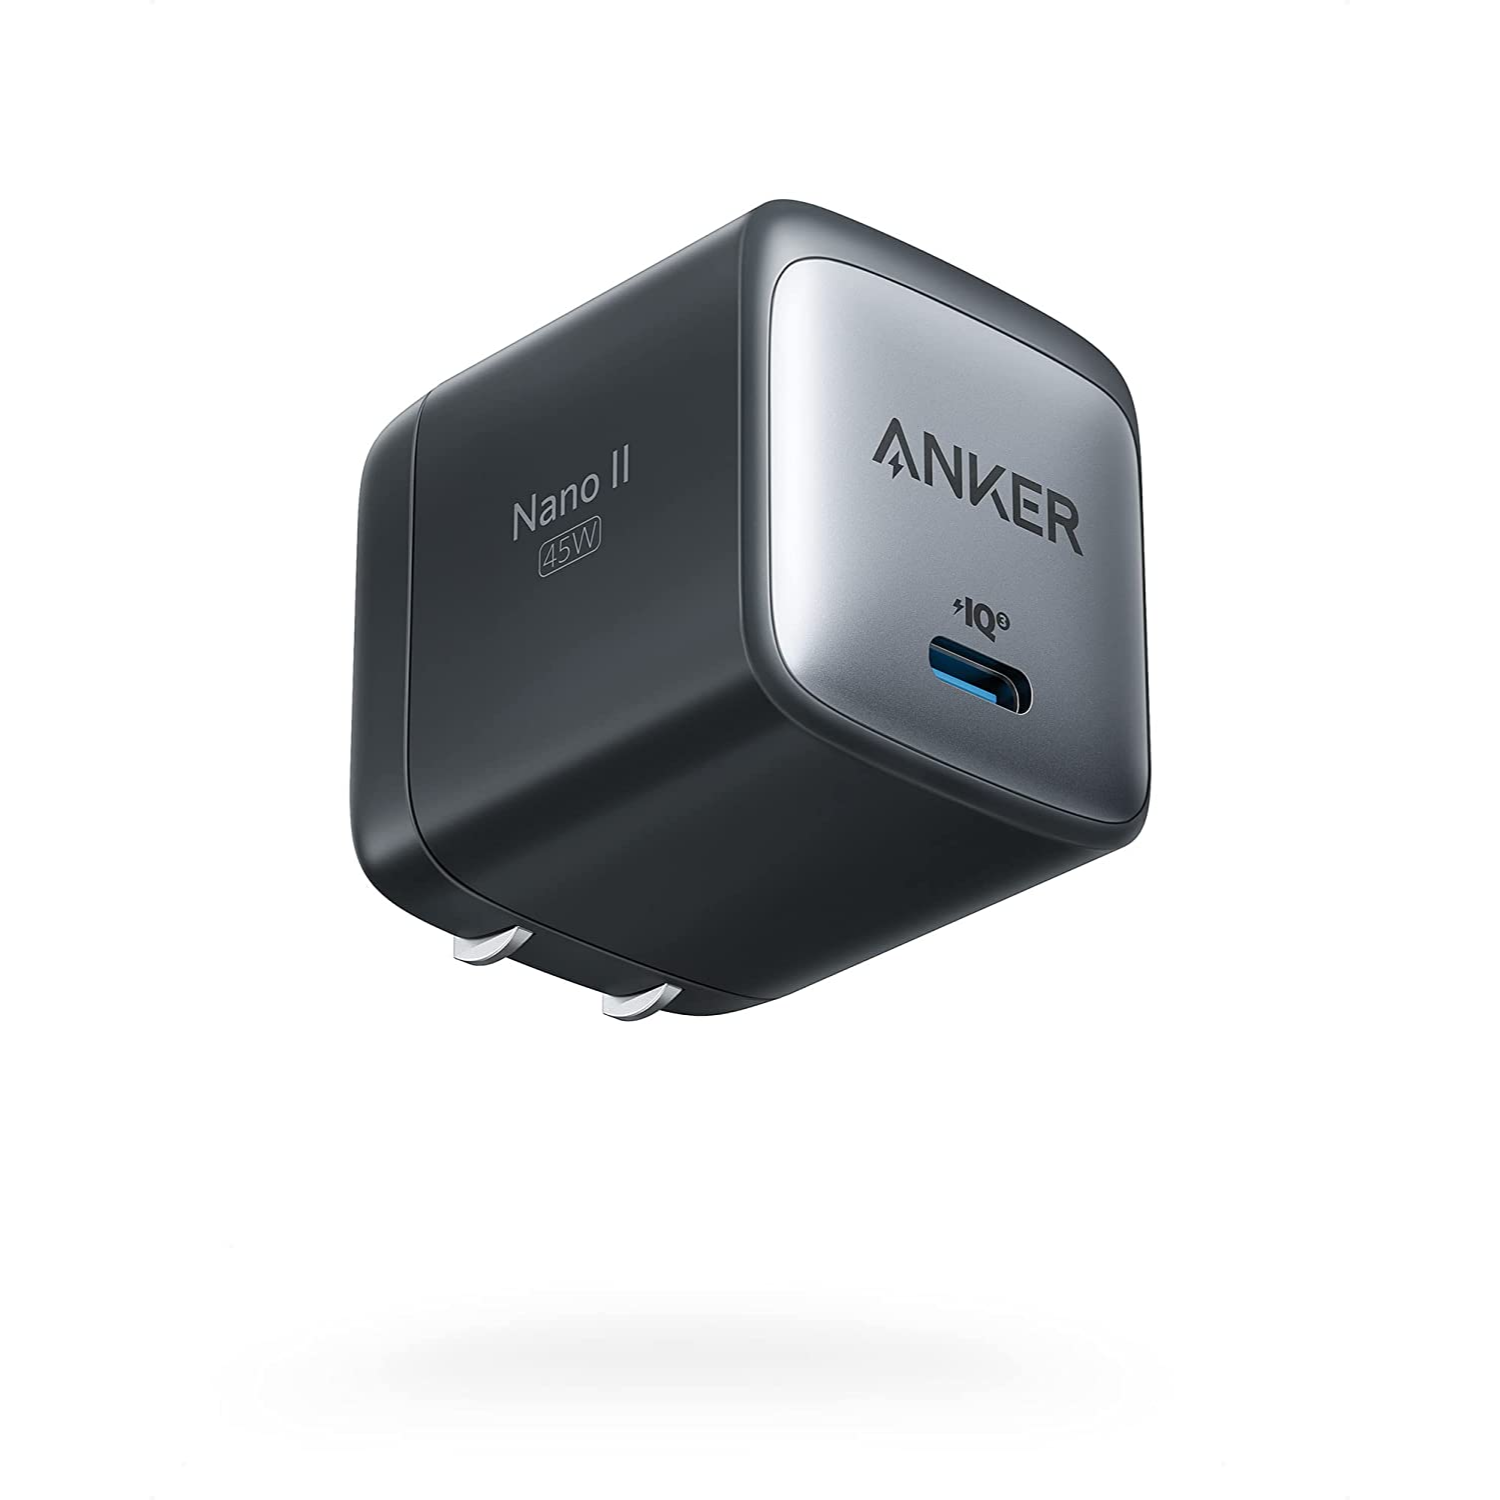 Anker 713 Nano II 45W Cargador USB-C Compacto Rápido para MacBook Pro 13, Galaxy S22/S22 +/S22 Ultra /S21, Note 20/10, iPhone 13/Pro/Max, iPad Pro, Pixel y más